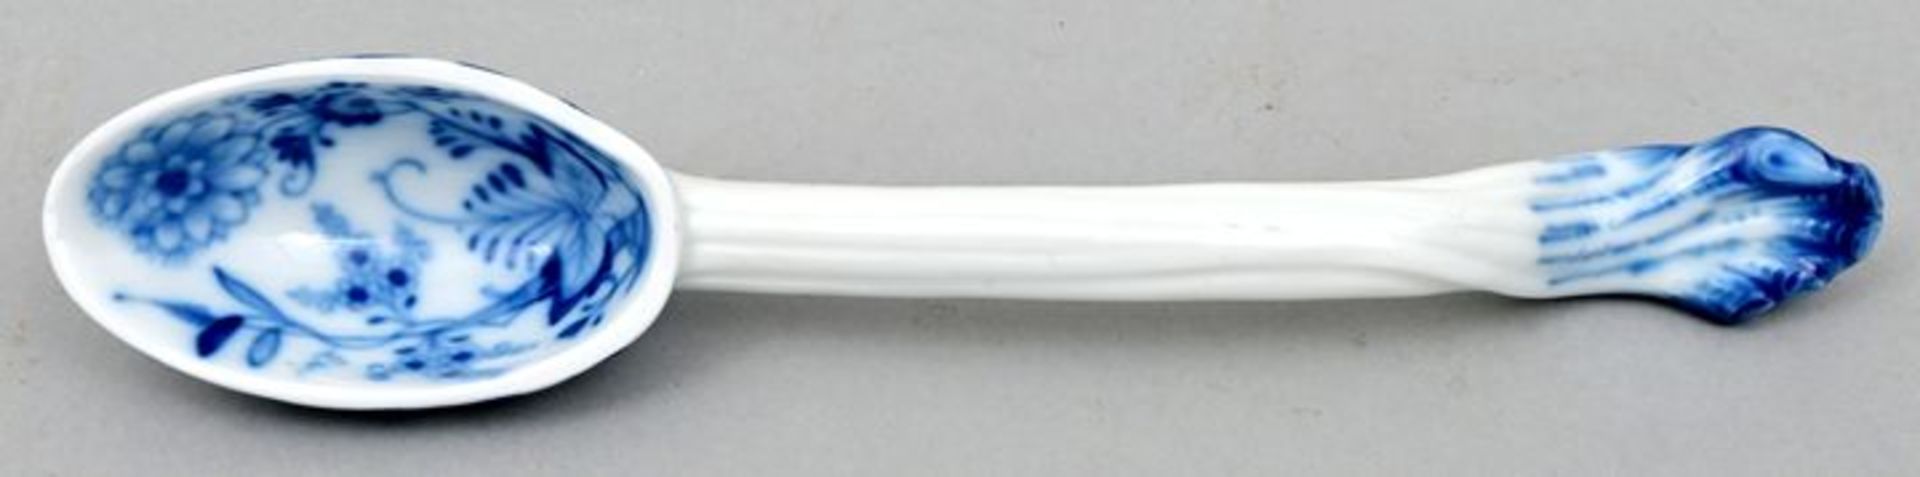 Porzellanlöffel/ Porcelain spoon